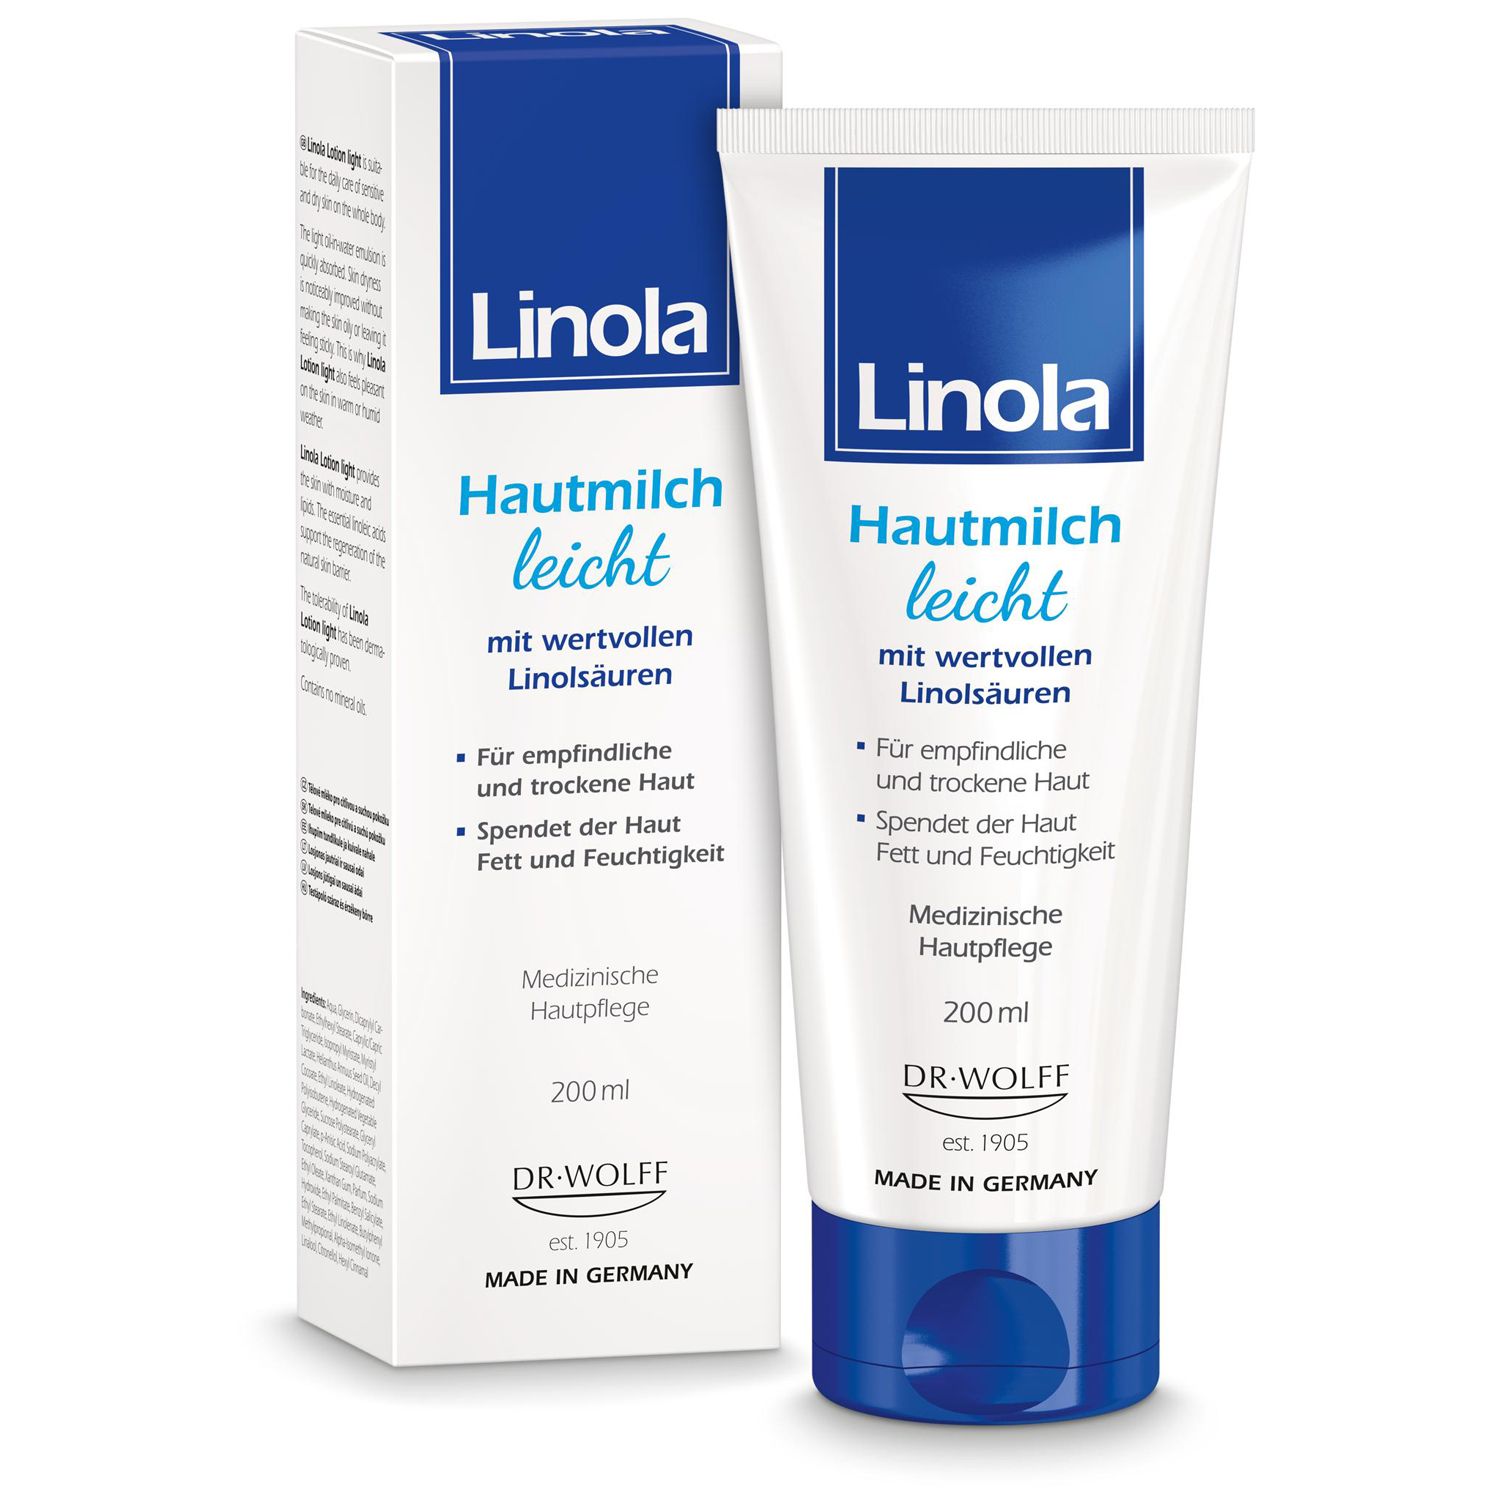 Linola Hautmilch leicht - Leichte Körperlotion für empfindliche und trockene Haut